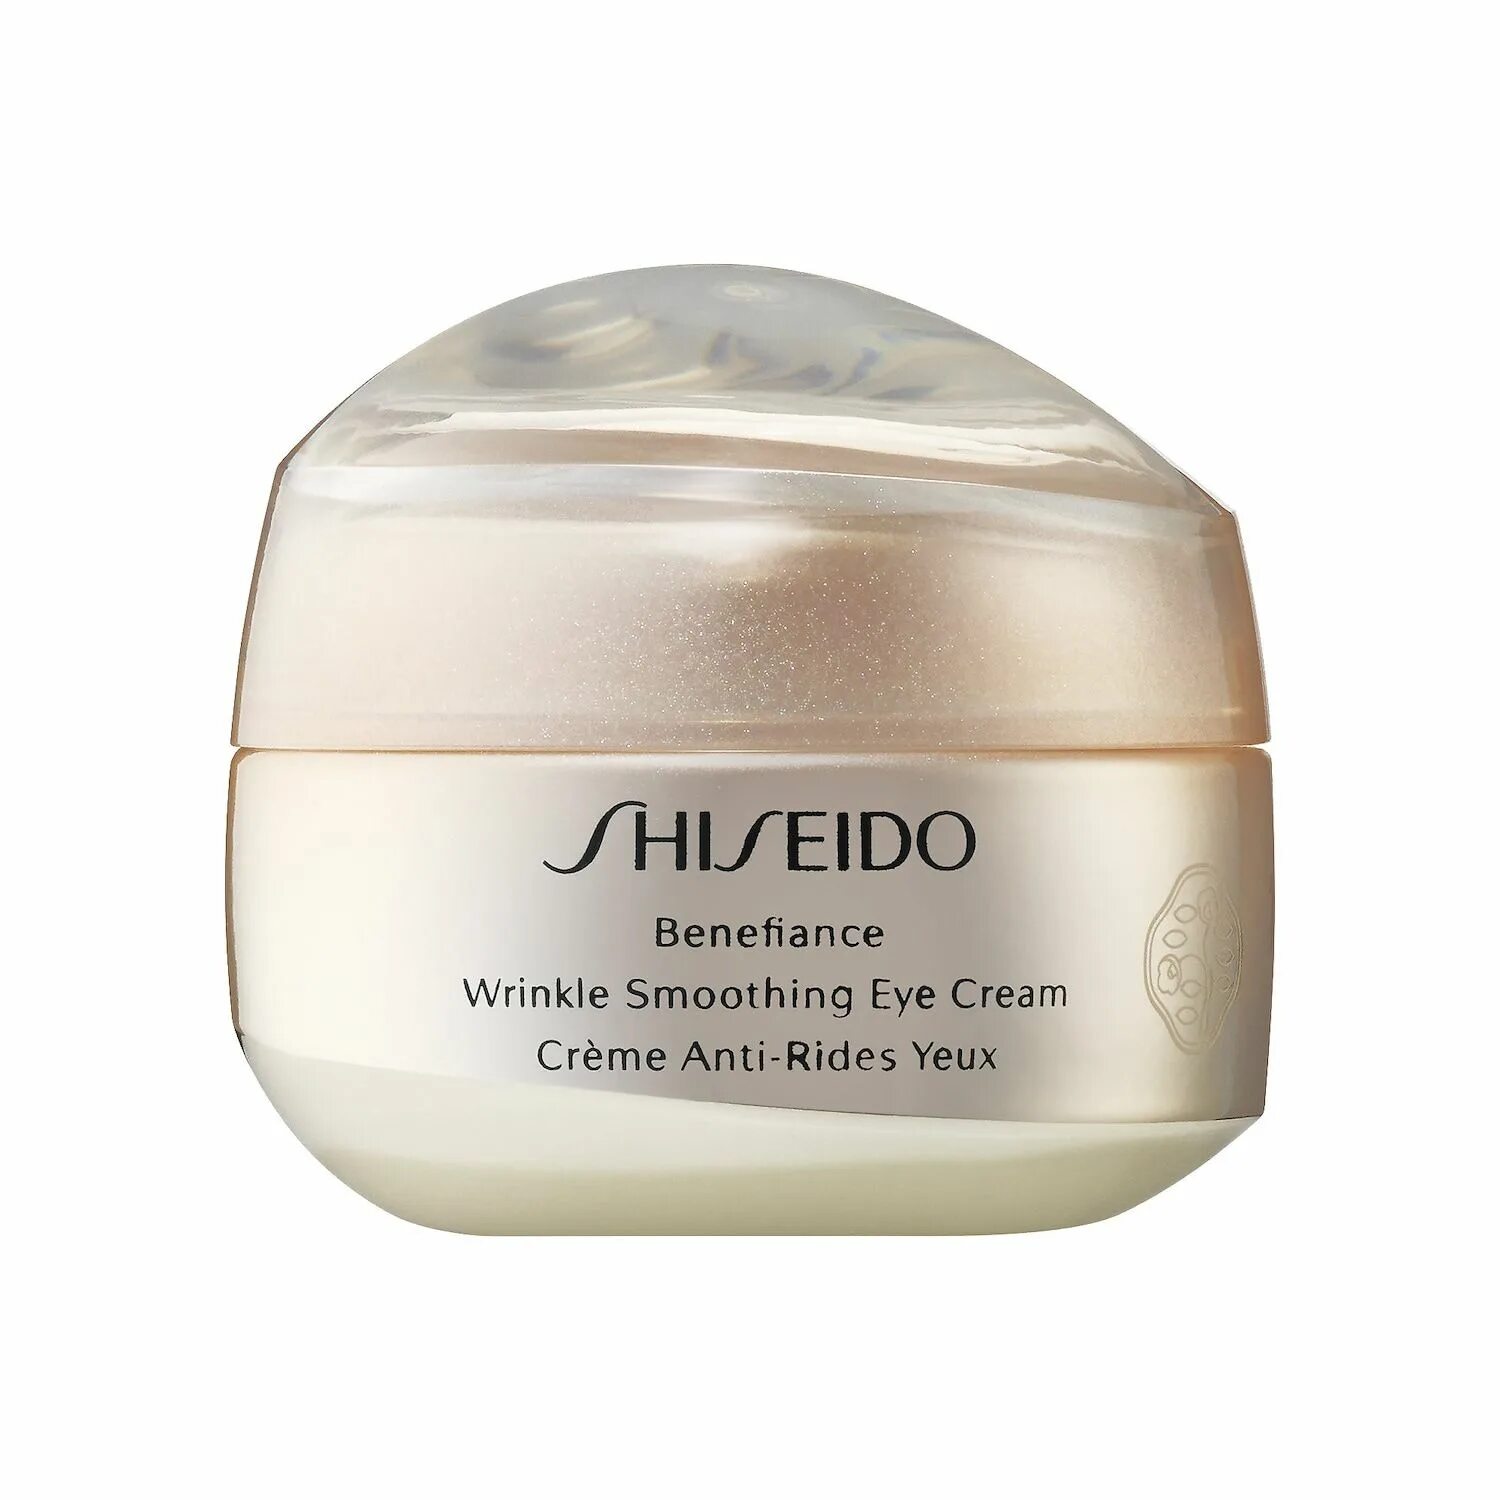 Shiseido Benefiance Eye Cream. Shiseido Benefiance Wrinkle Smoothing Eye Cream. Shiseido Wrinkle Smoothing Cream. Shiseido // крем Benefiance Wrinkle Smoothing Eye Cream 15ml. Shiseido benefiance wrinkle